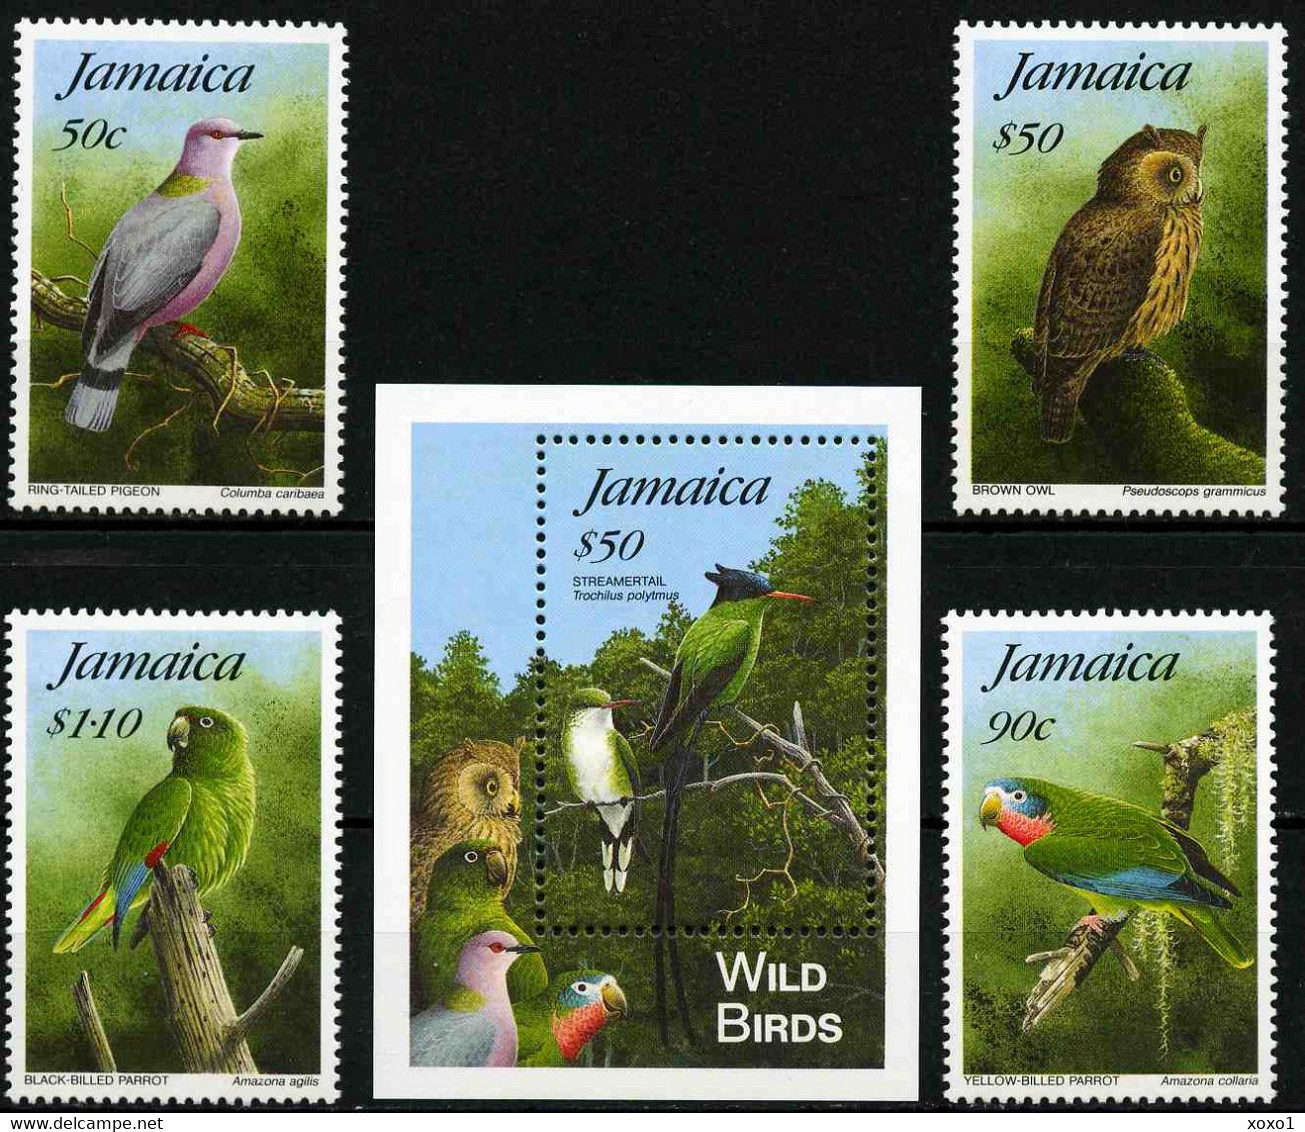 Jamaica 1995 MiNr. 852 - 855(Block 42) Jamaika Birds 4v+1bl MNH** 21,00 € - Hiboux & Chouettes